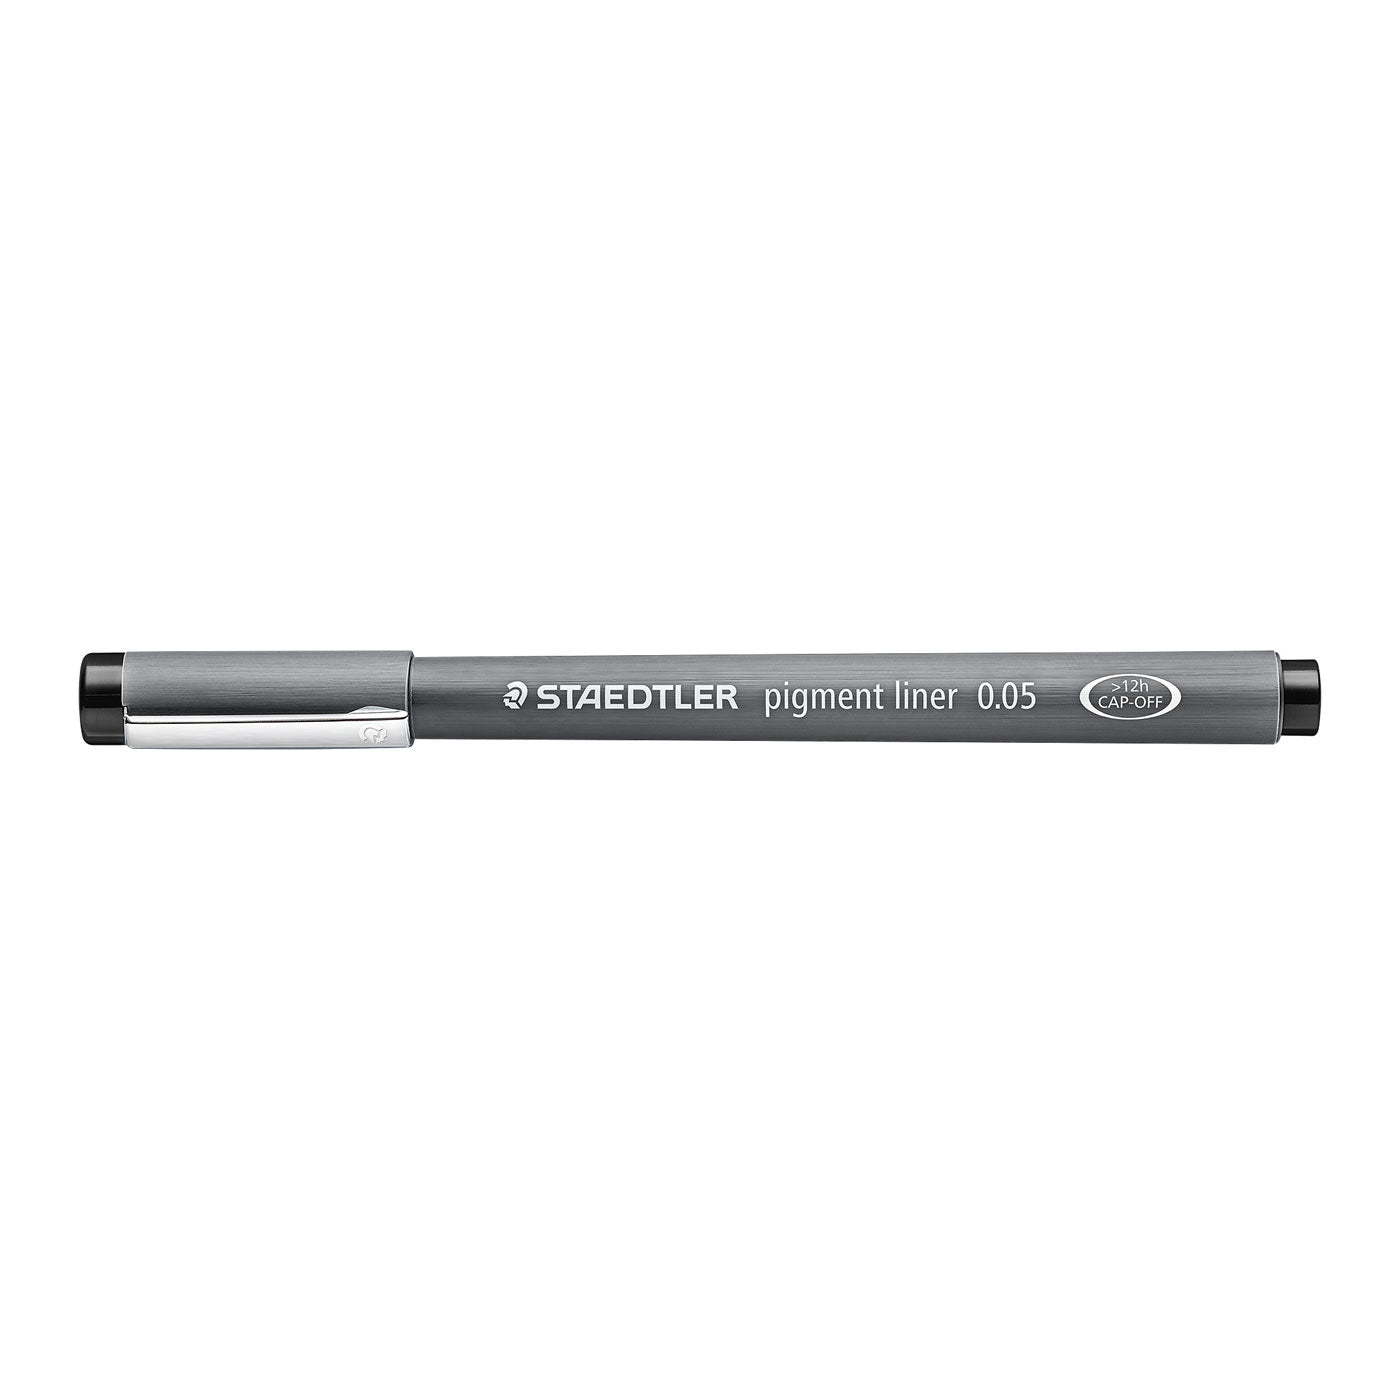 Staedtler Marsgraphic Fineliner Pigment Ink Pen Black 0.05mm